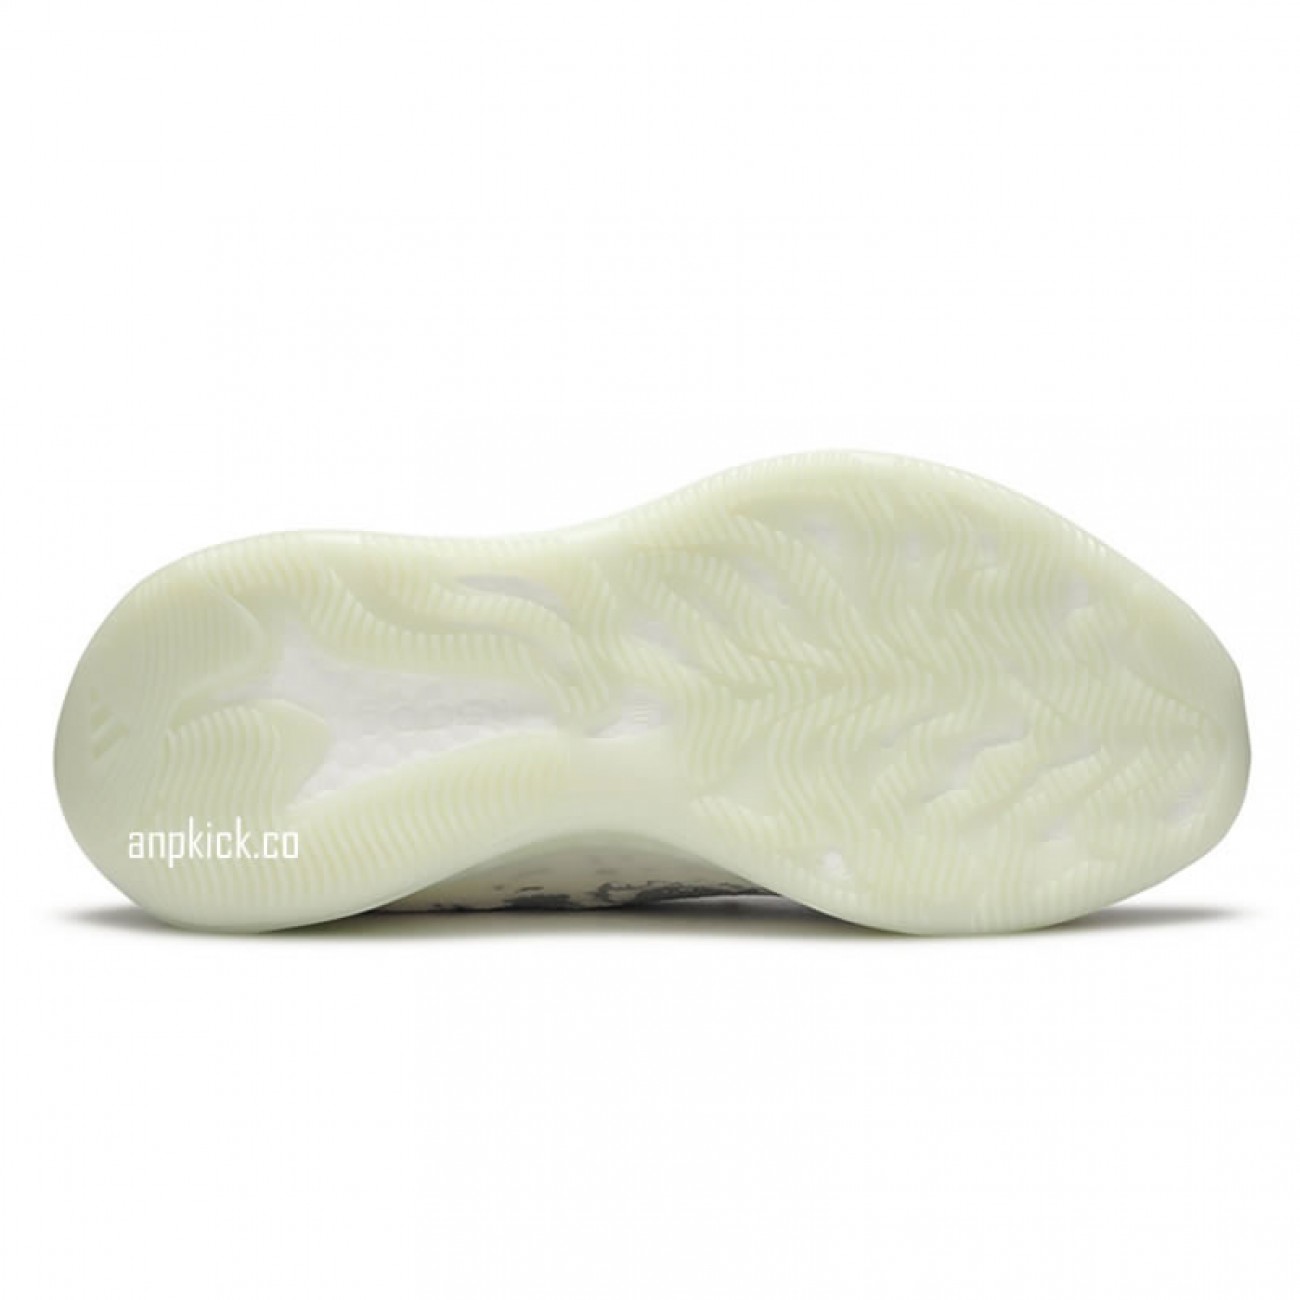 adidas Yeezy Boost 380 "Alien" FV3260 Release Date